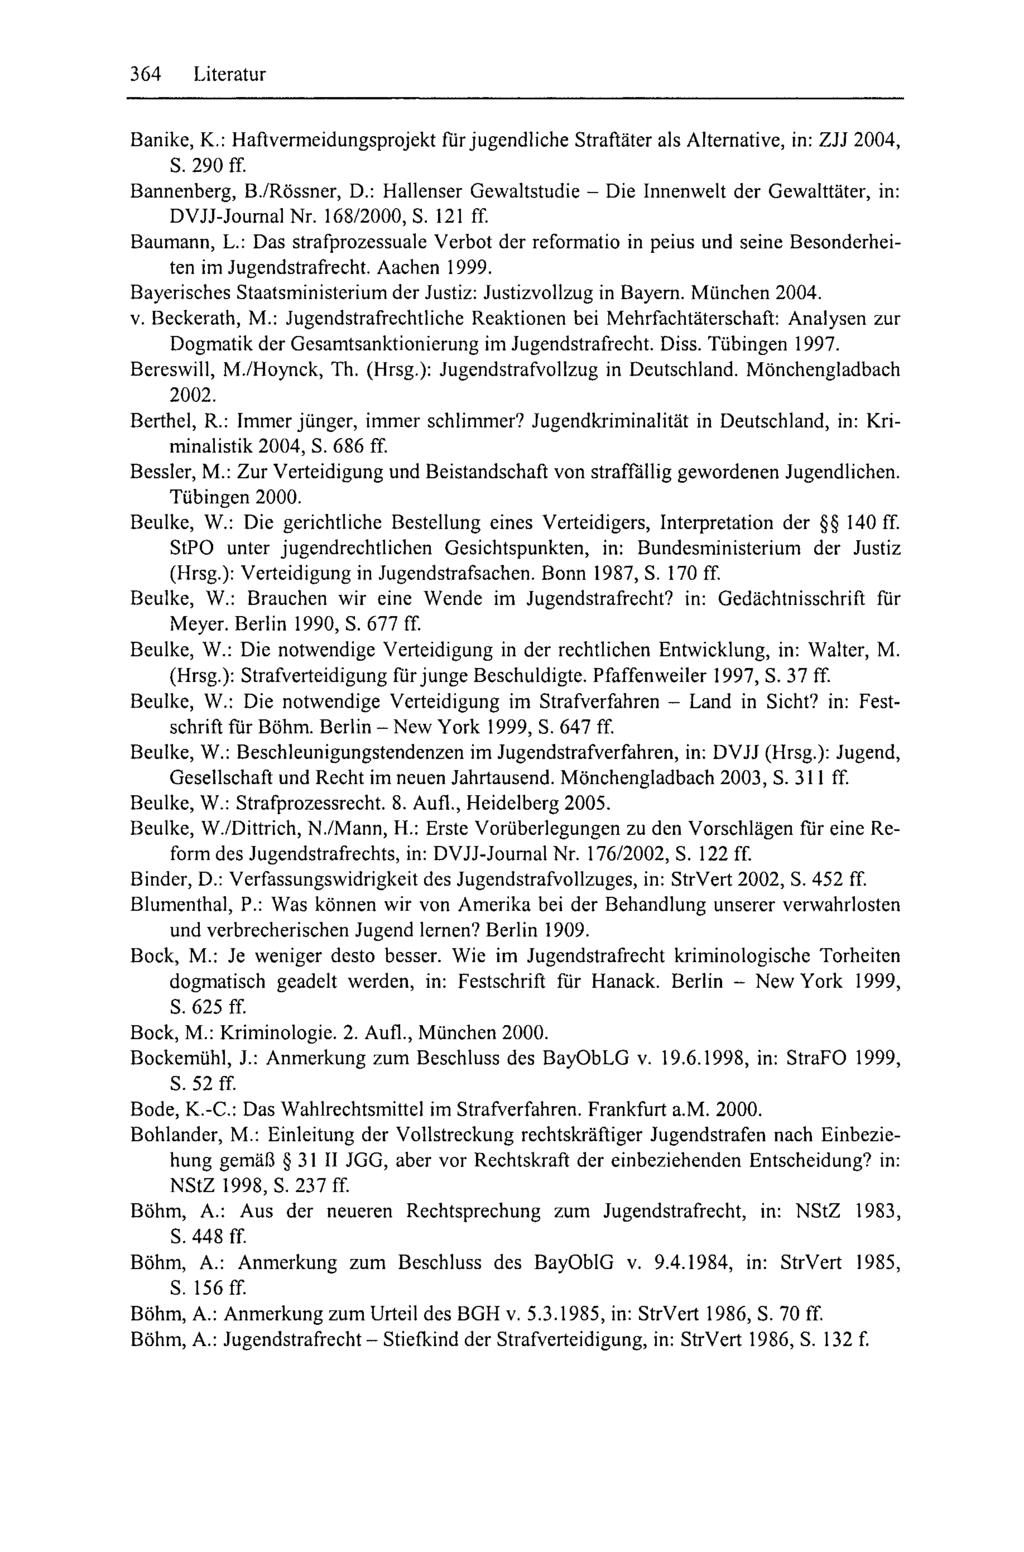 364 Literatur Banike, K.: Haftvermeidungsprojekt fiir jugendliche Straftäter als Alternative, in: ZJJ 2004, S. 290 ff Bannenberg, B./Rössner, D.